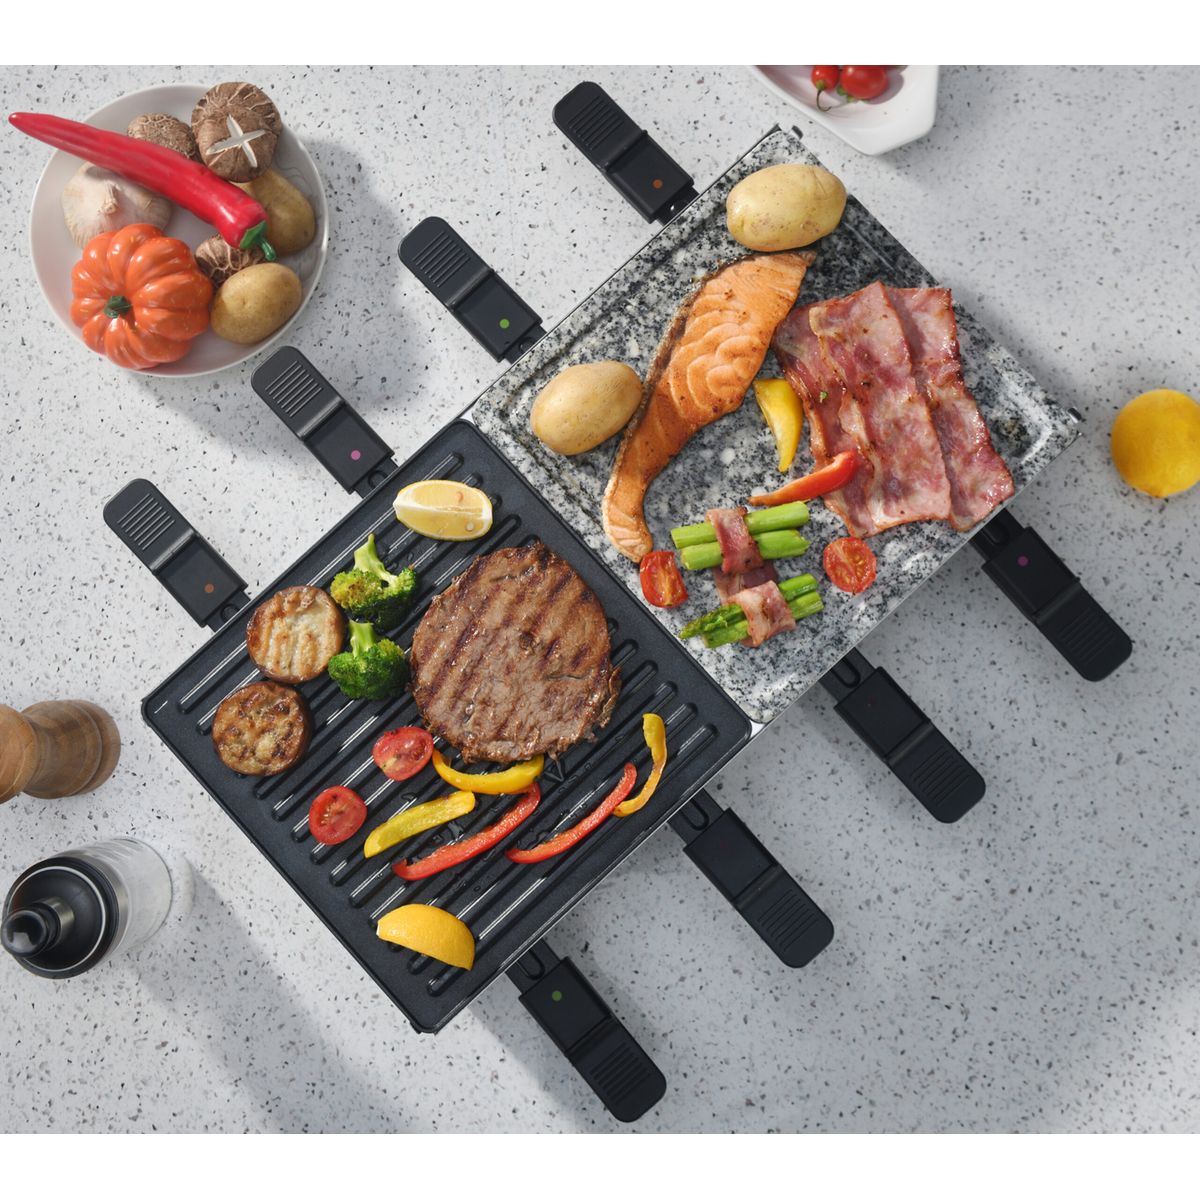 raclette, pierre à cuire et grill 8 personnes design convivial